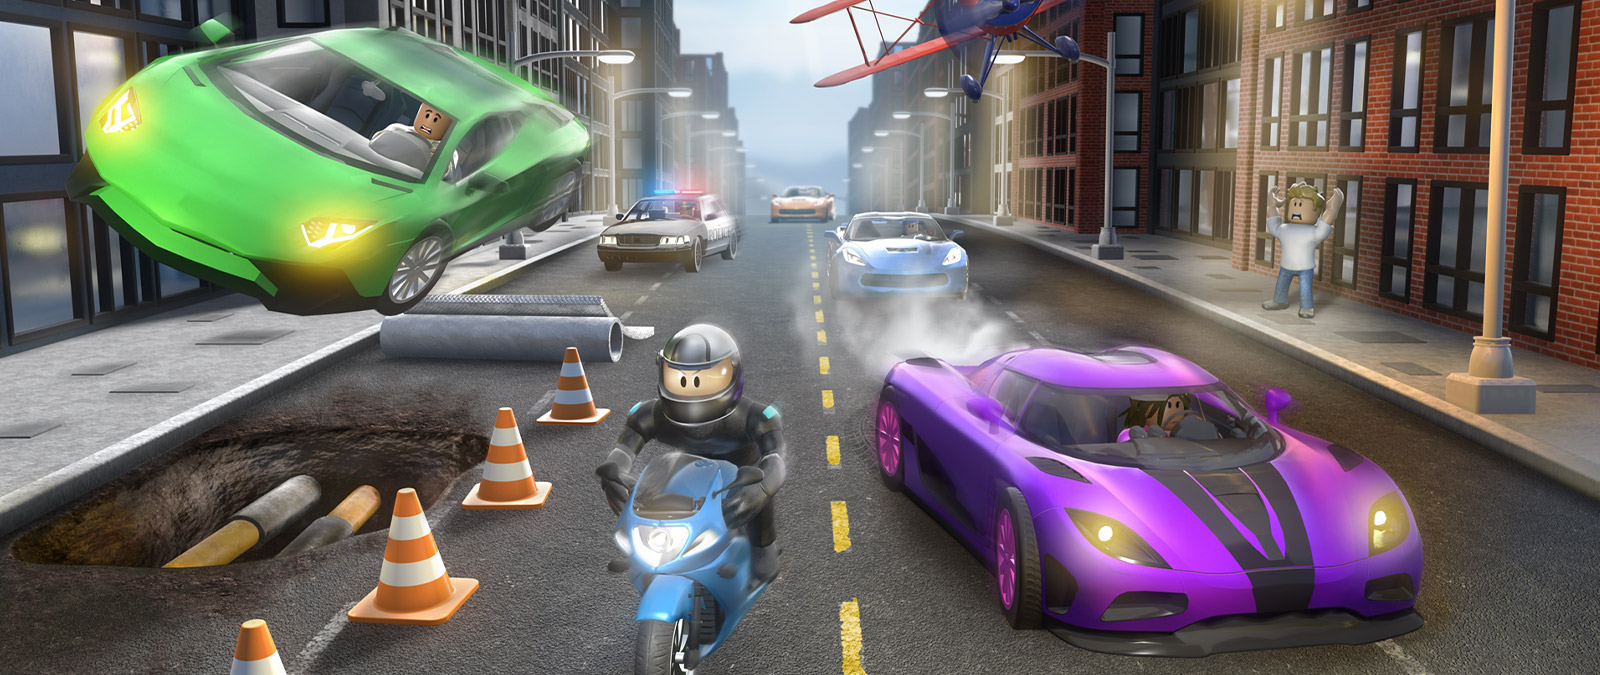 Personaje de Roblox Vehicle Simulator en una moto perseguido por otros vehículos en una calle de la ciudad